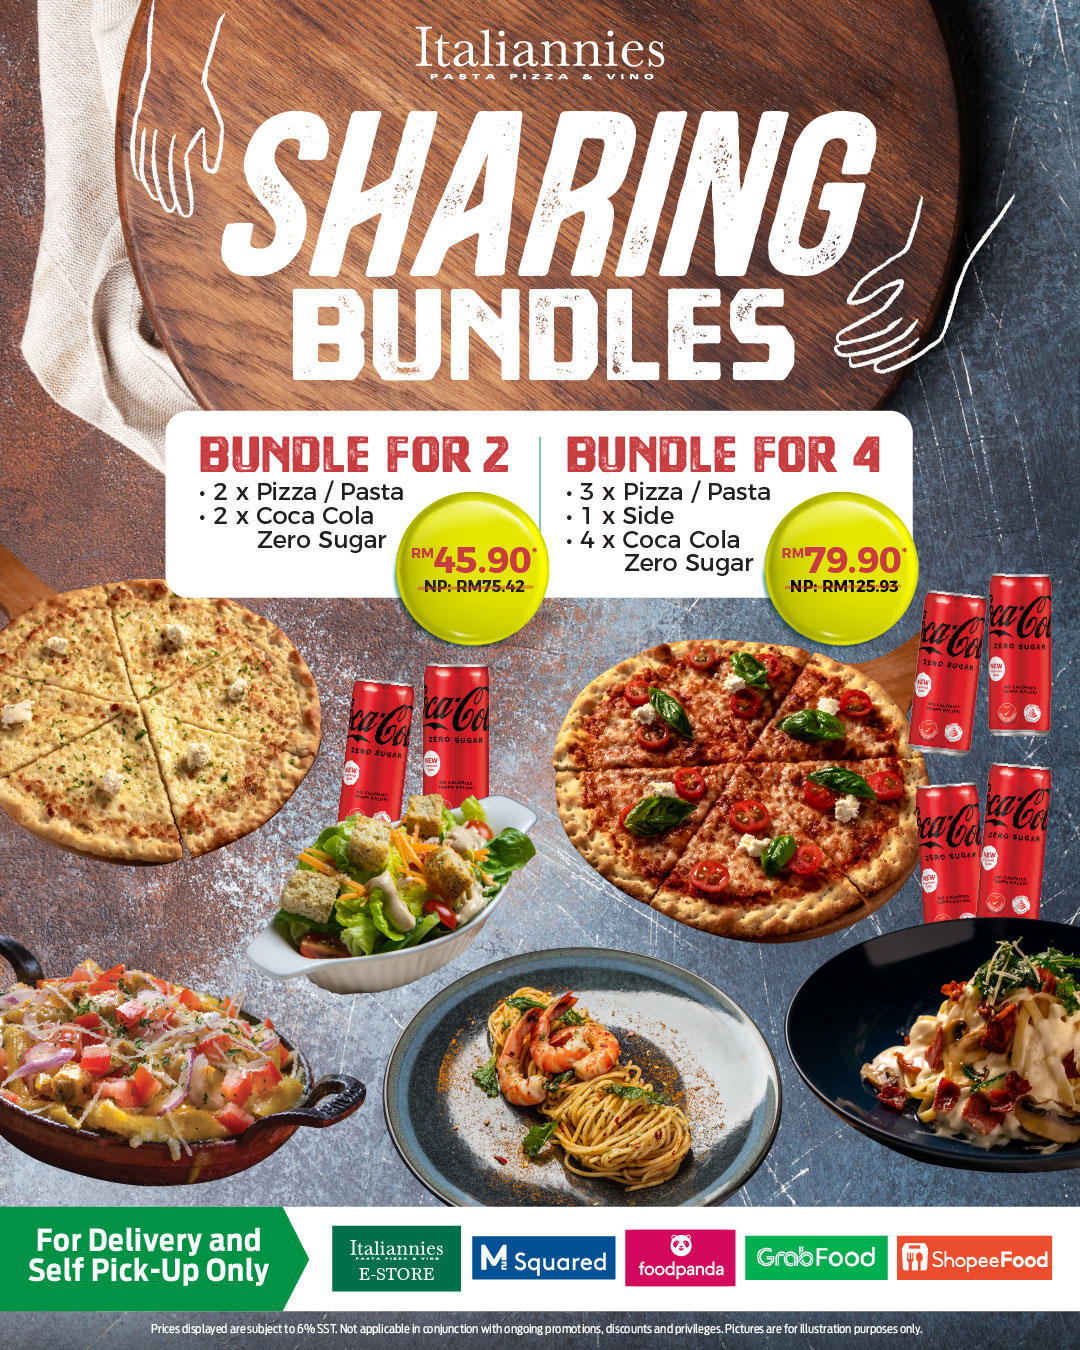 Sharing Bundles